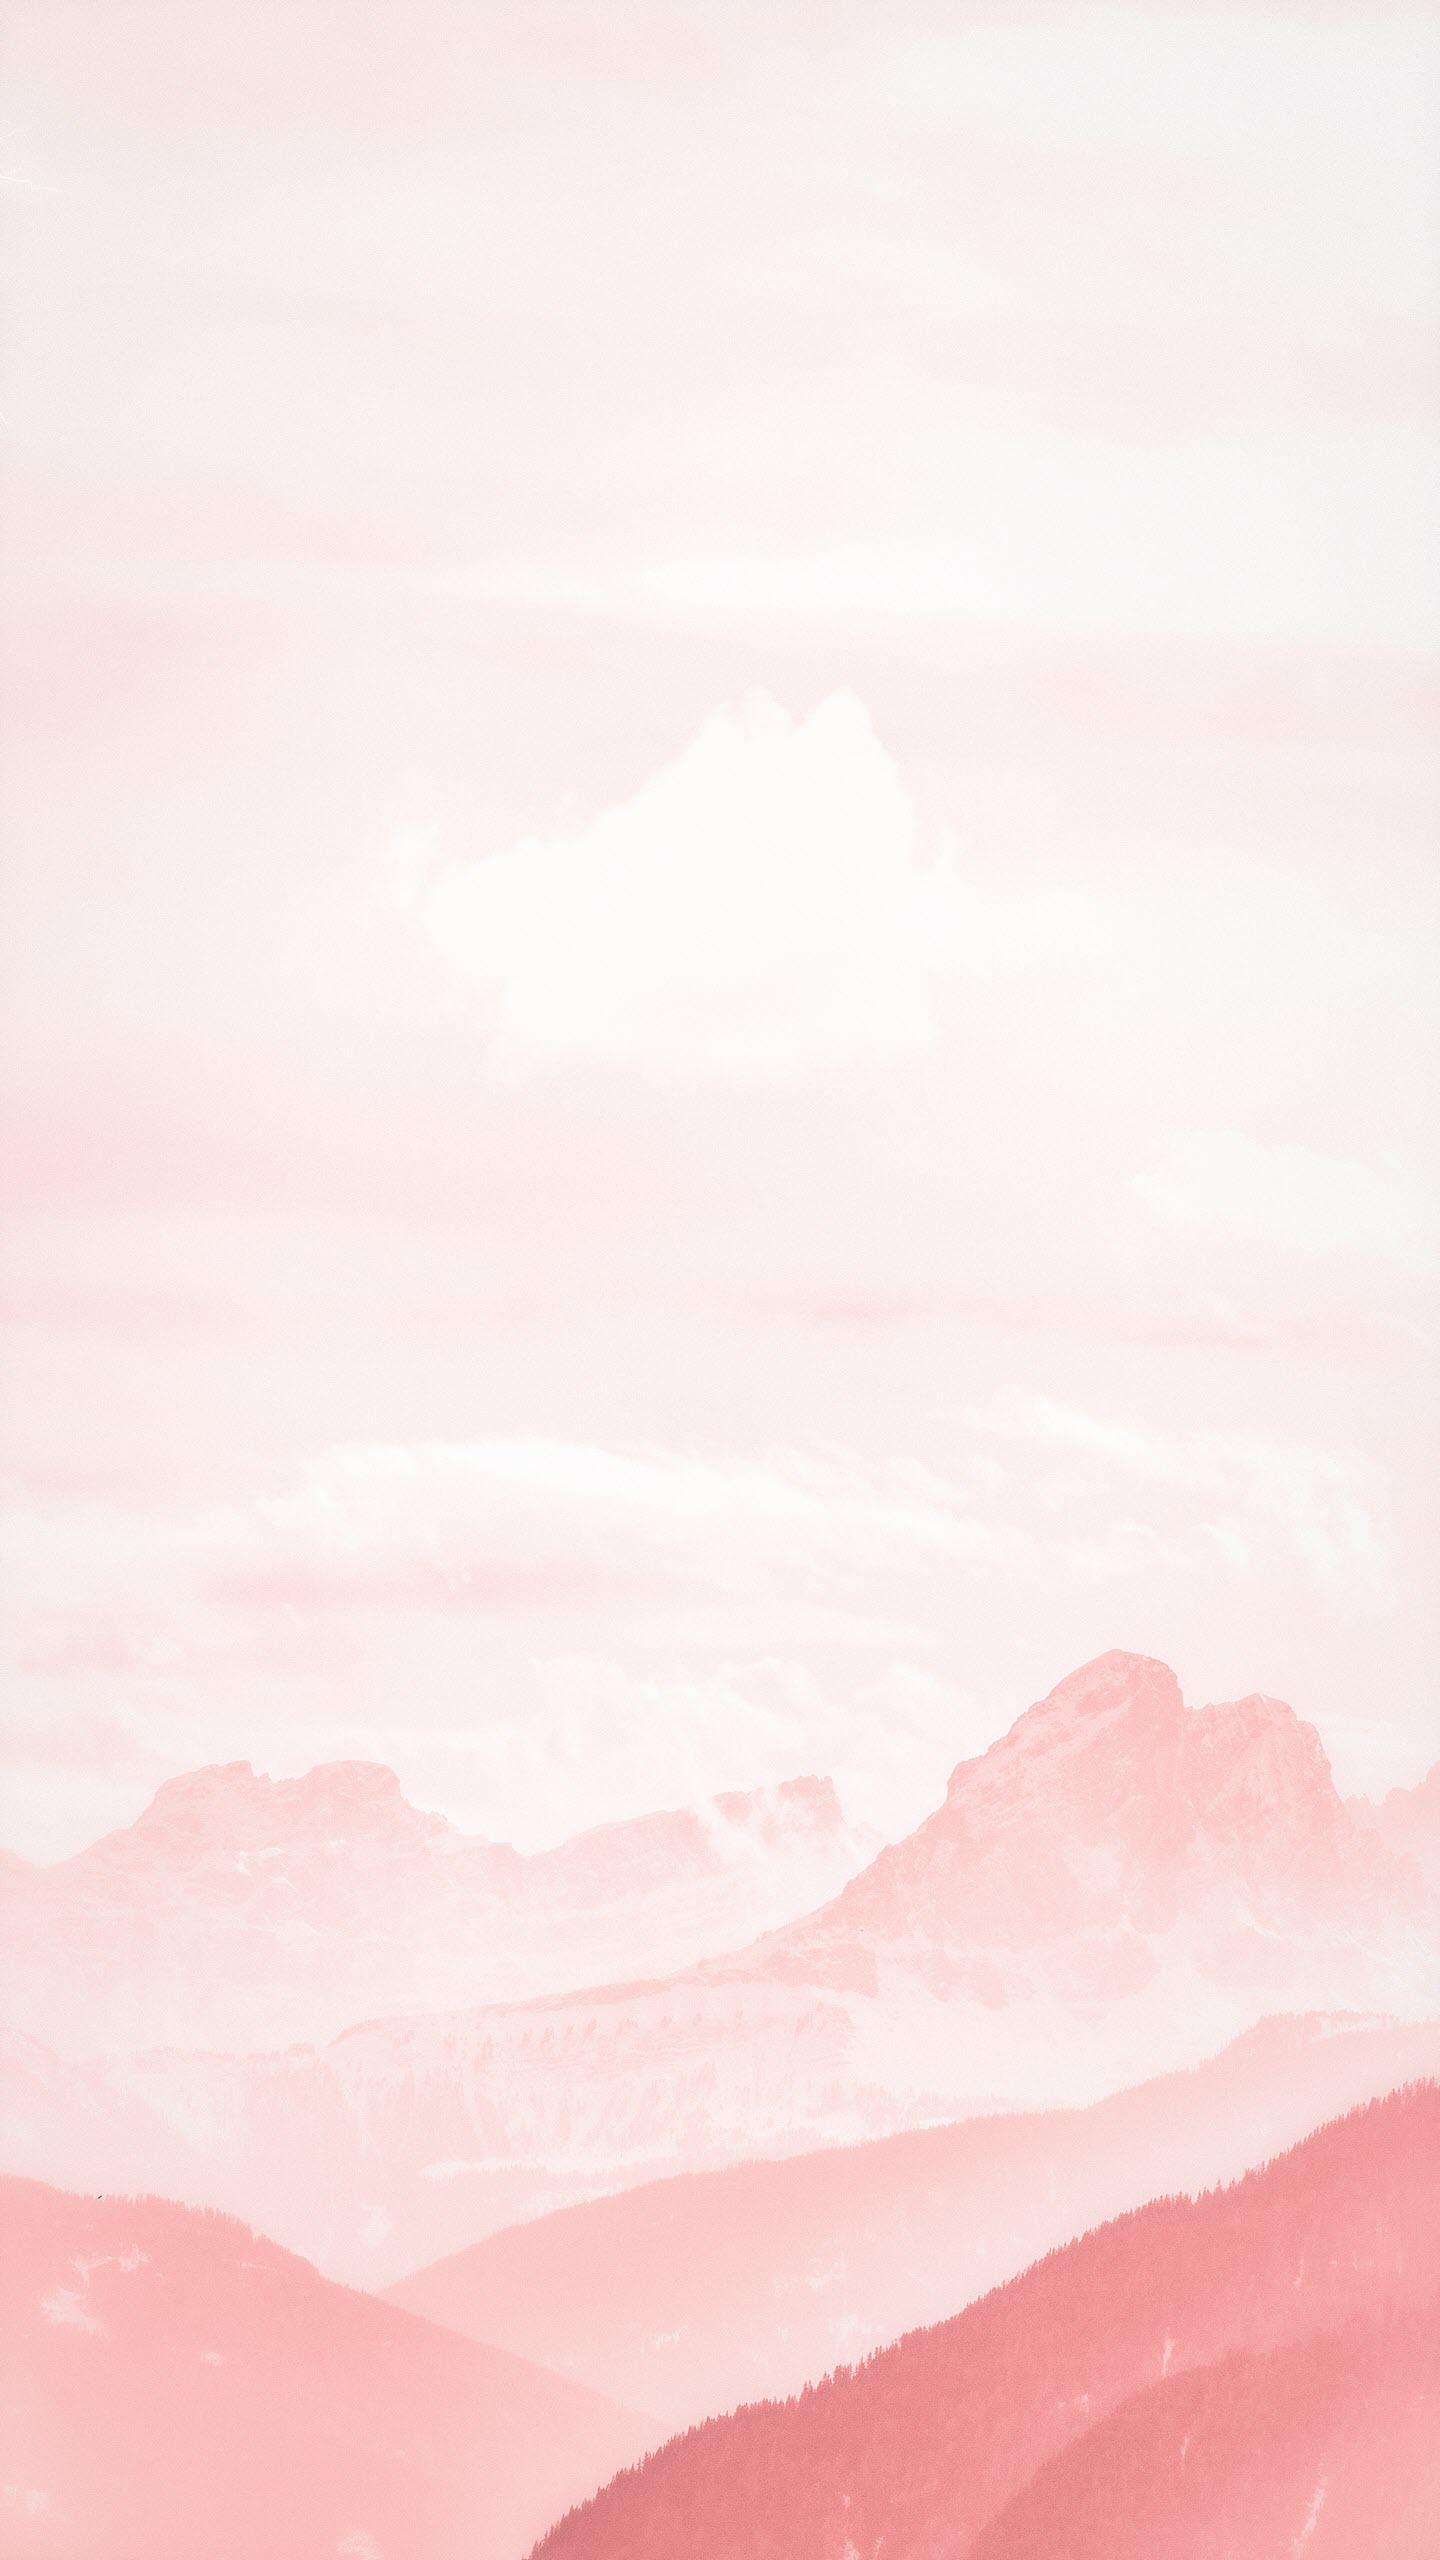 Màu hồng pastel trơn – sự pha trộn giữa sự nữ tính và sự nhẹ nhàng. Hãy cùng thưởng thức những bức ảnh với gam màu hồng pastel trơn tinh tế và dễ chịu tại trang web của chúng tôi. Điều này sẽ giúp bạn thư giãn và tìm lại cảm giác yên bình.